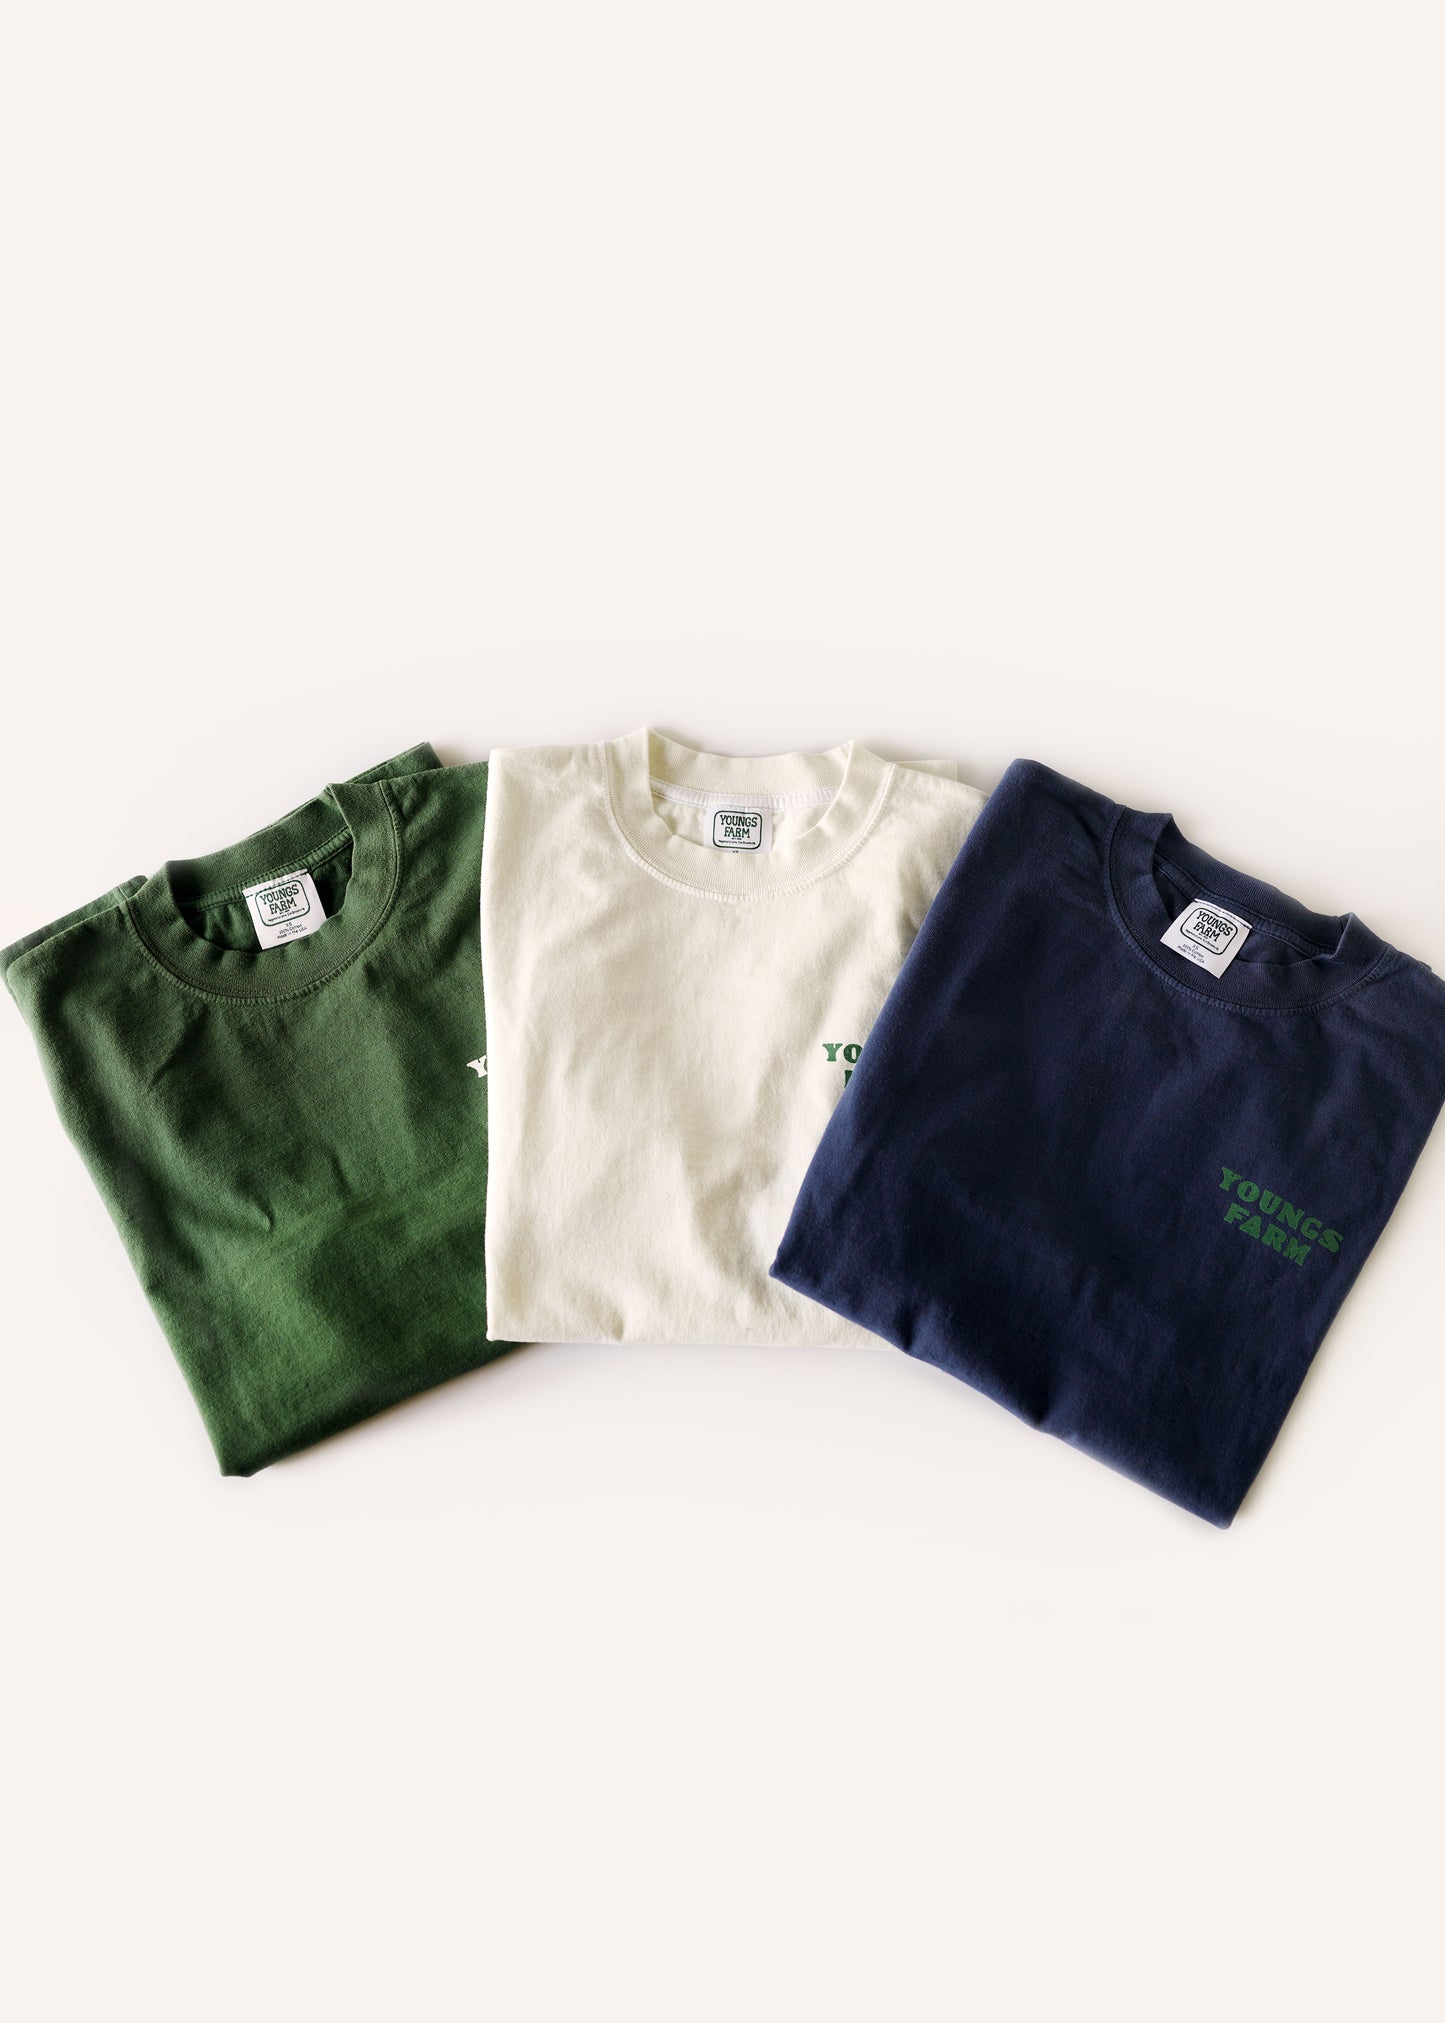 Tshirt - Green